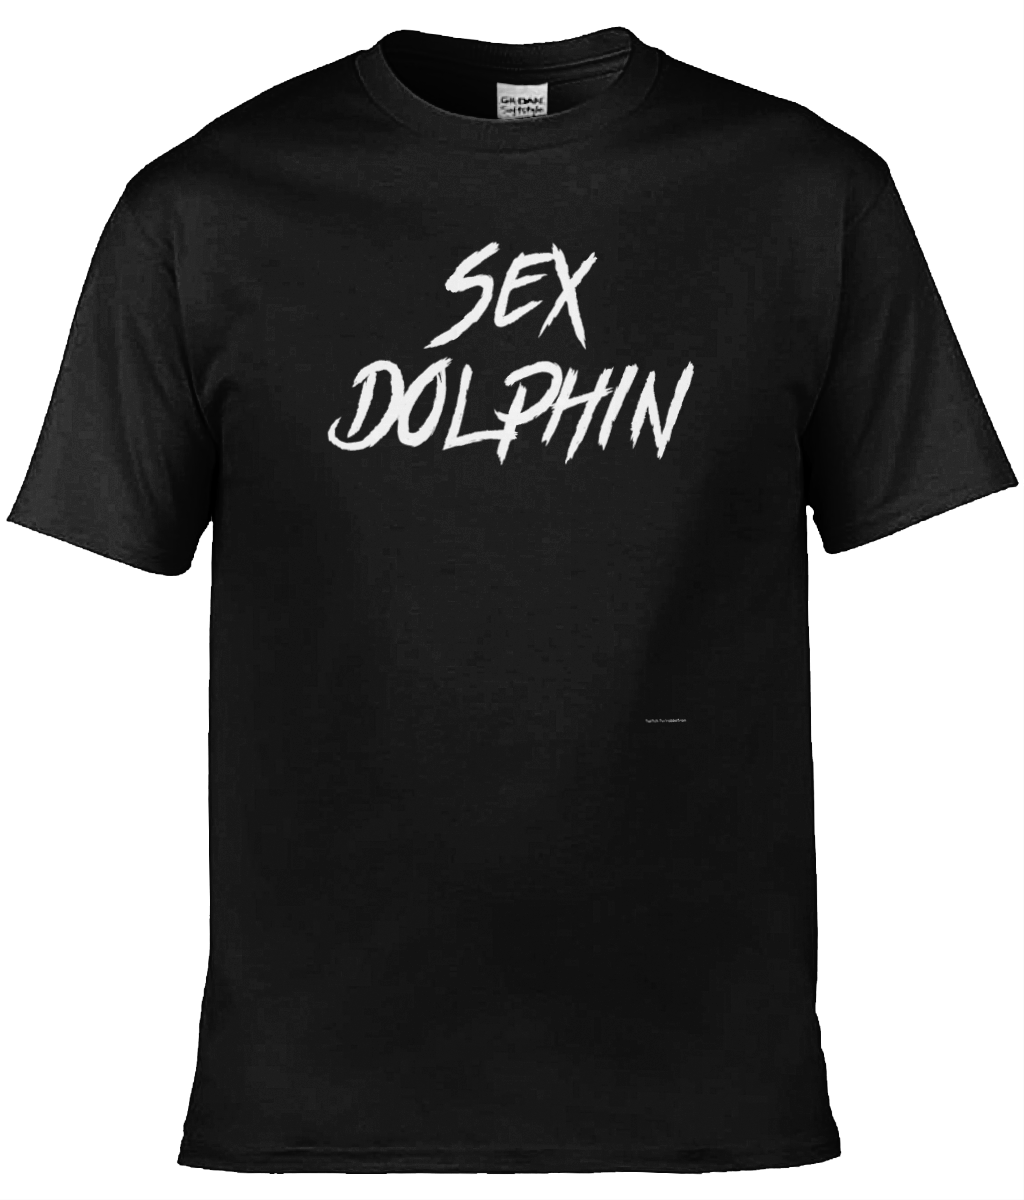 Sex Dolphin T-shirt